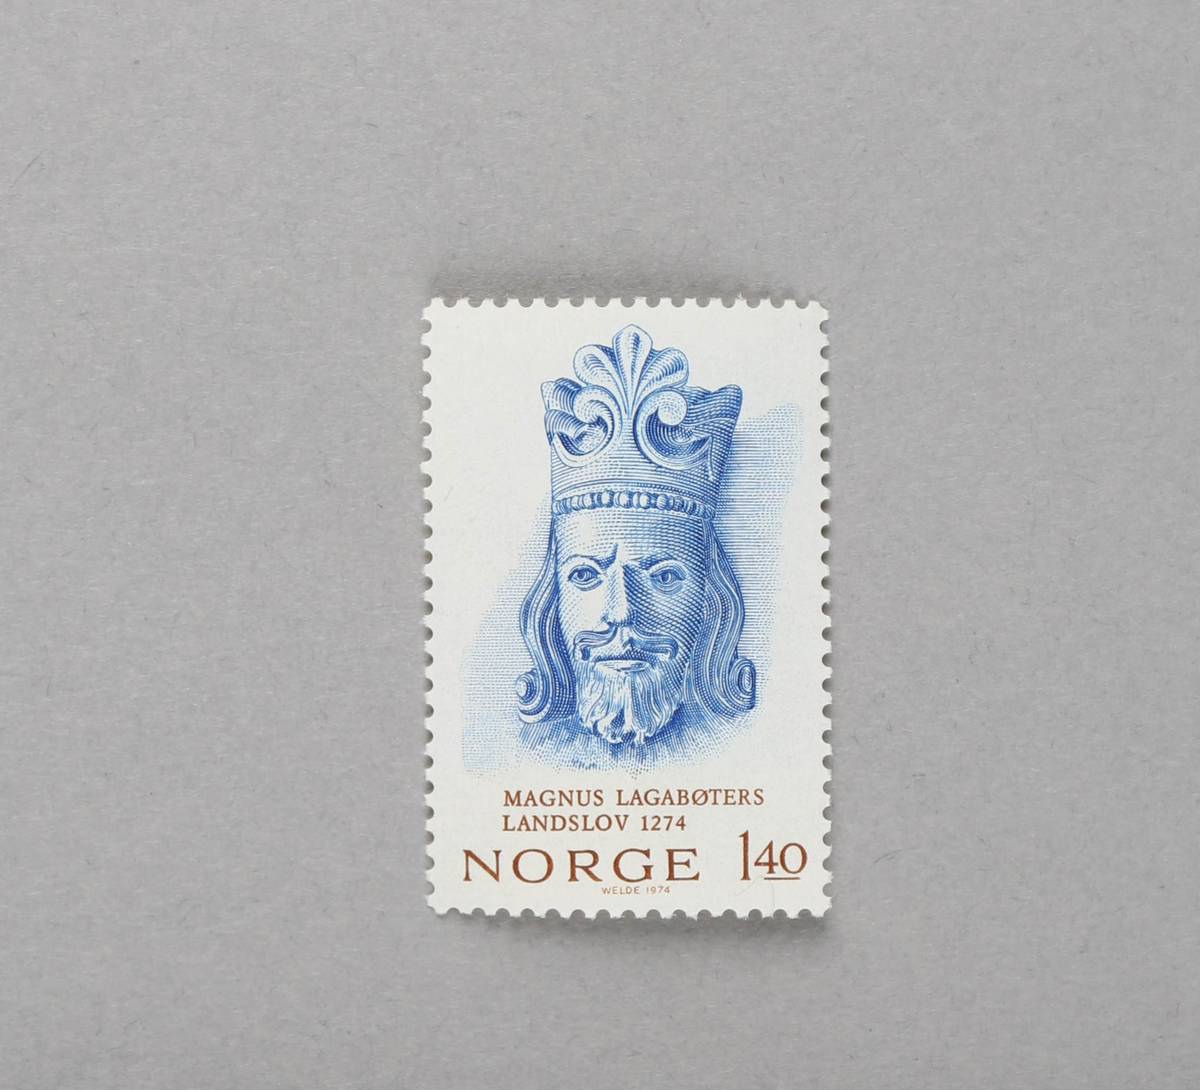 Portrettegning av en konge med krone (Magnus Lagabøter).